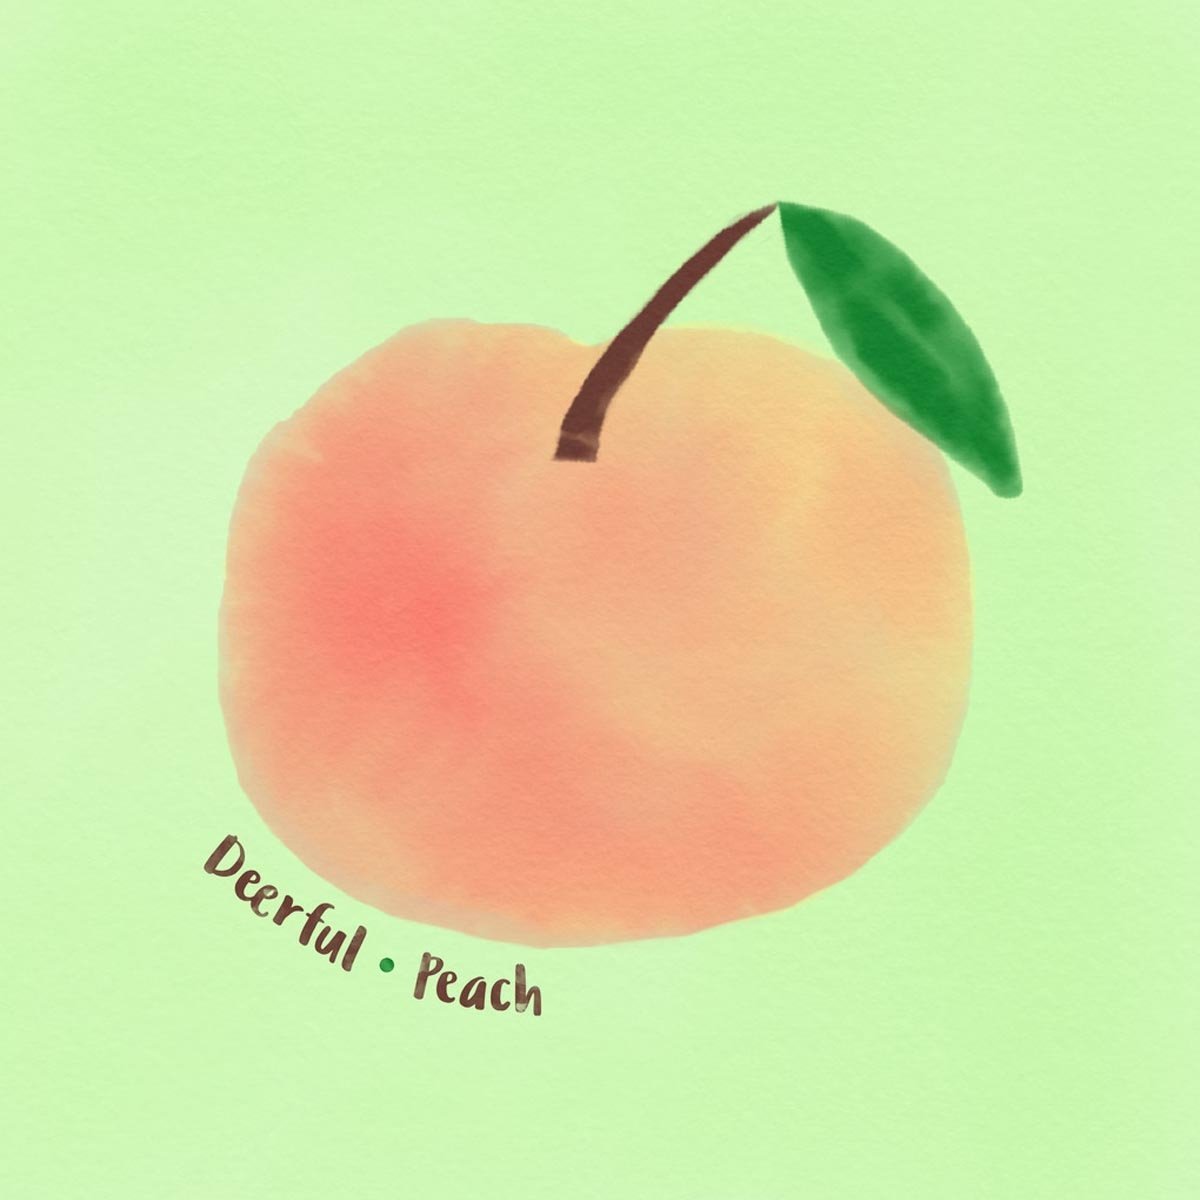 Deerful - Peach (wiaiwya)